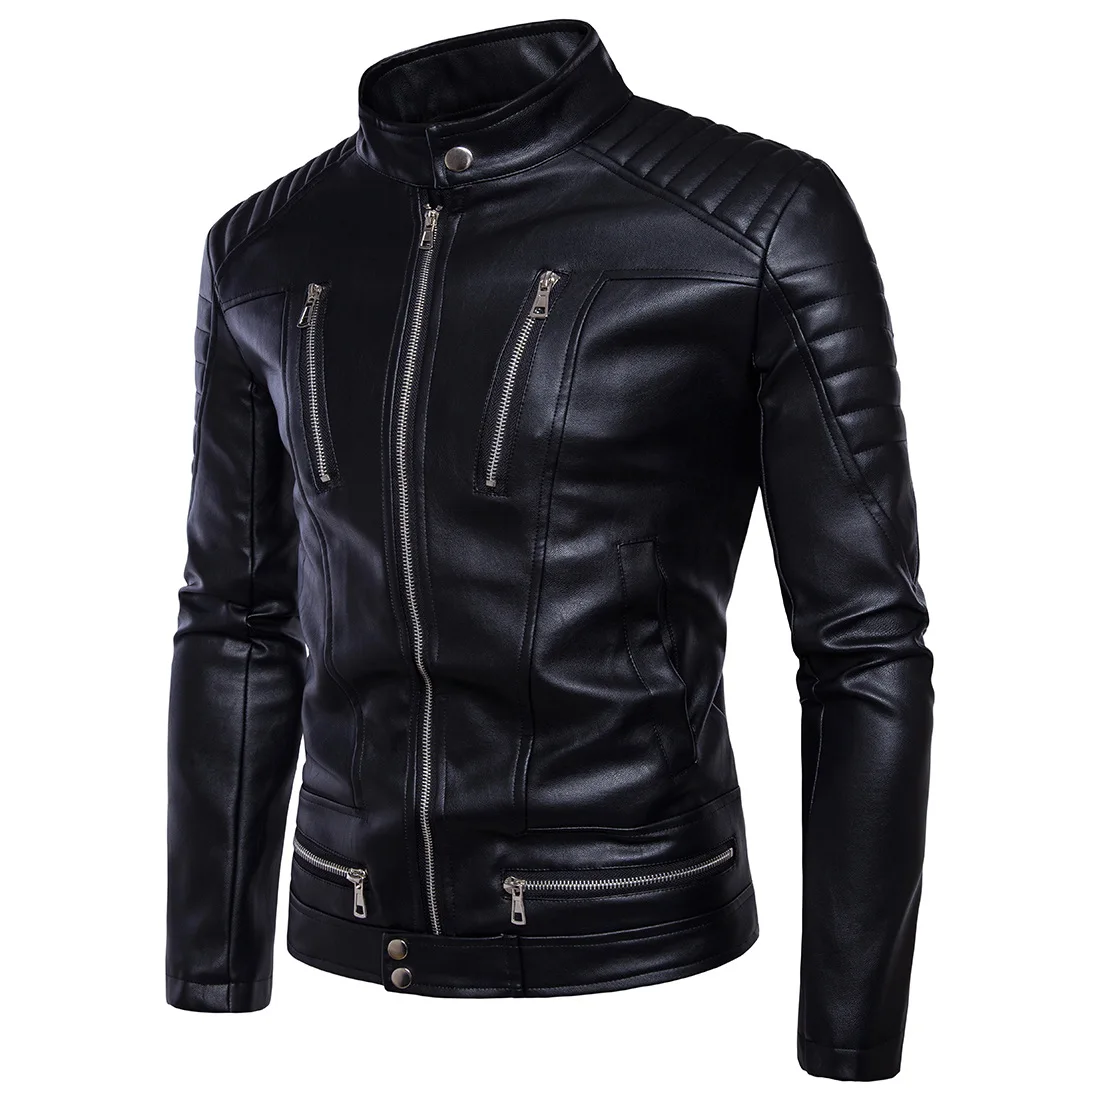 Осенняя мотоциклетная байкерская куртка, Мужская куртка из искусственной кожи, пальто на молнии, мотоциклетная куртка, верхняя одежда, Кашемировые топы, брендовая одежда